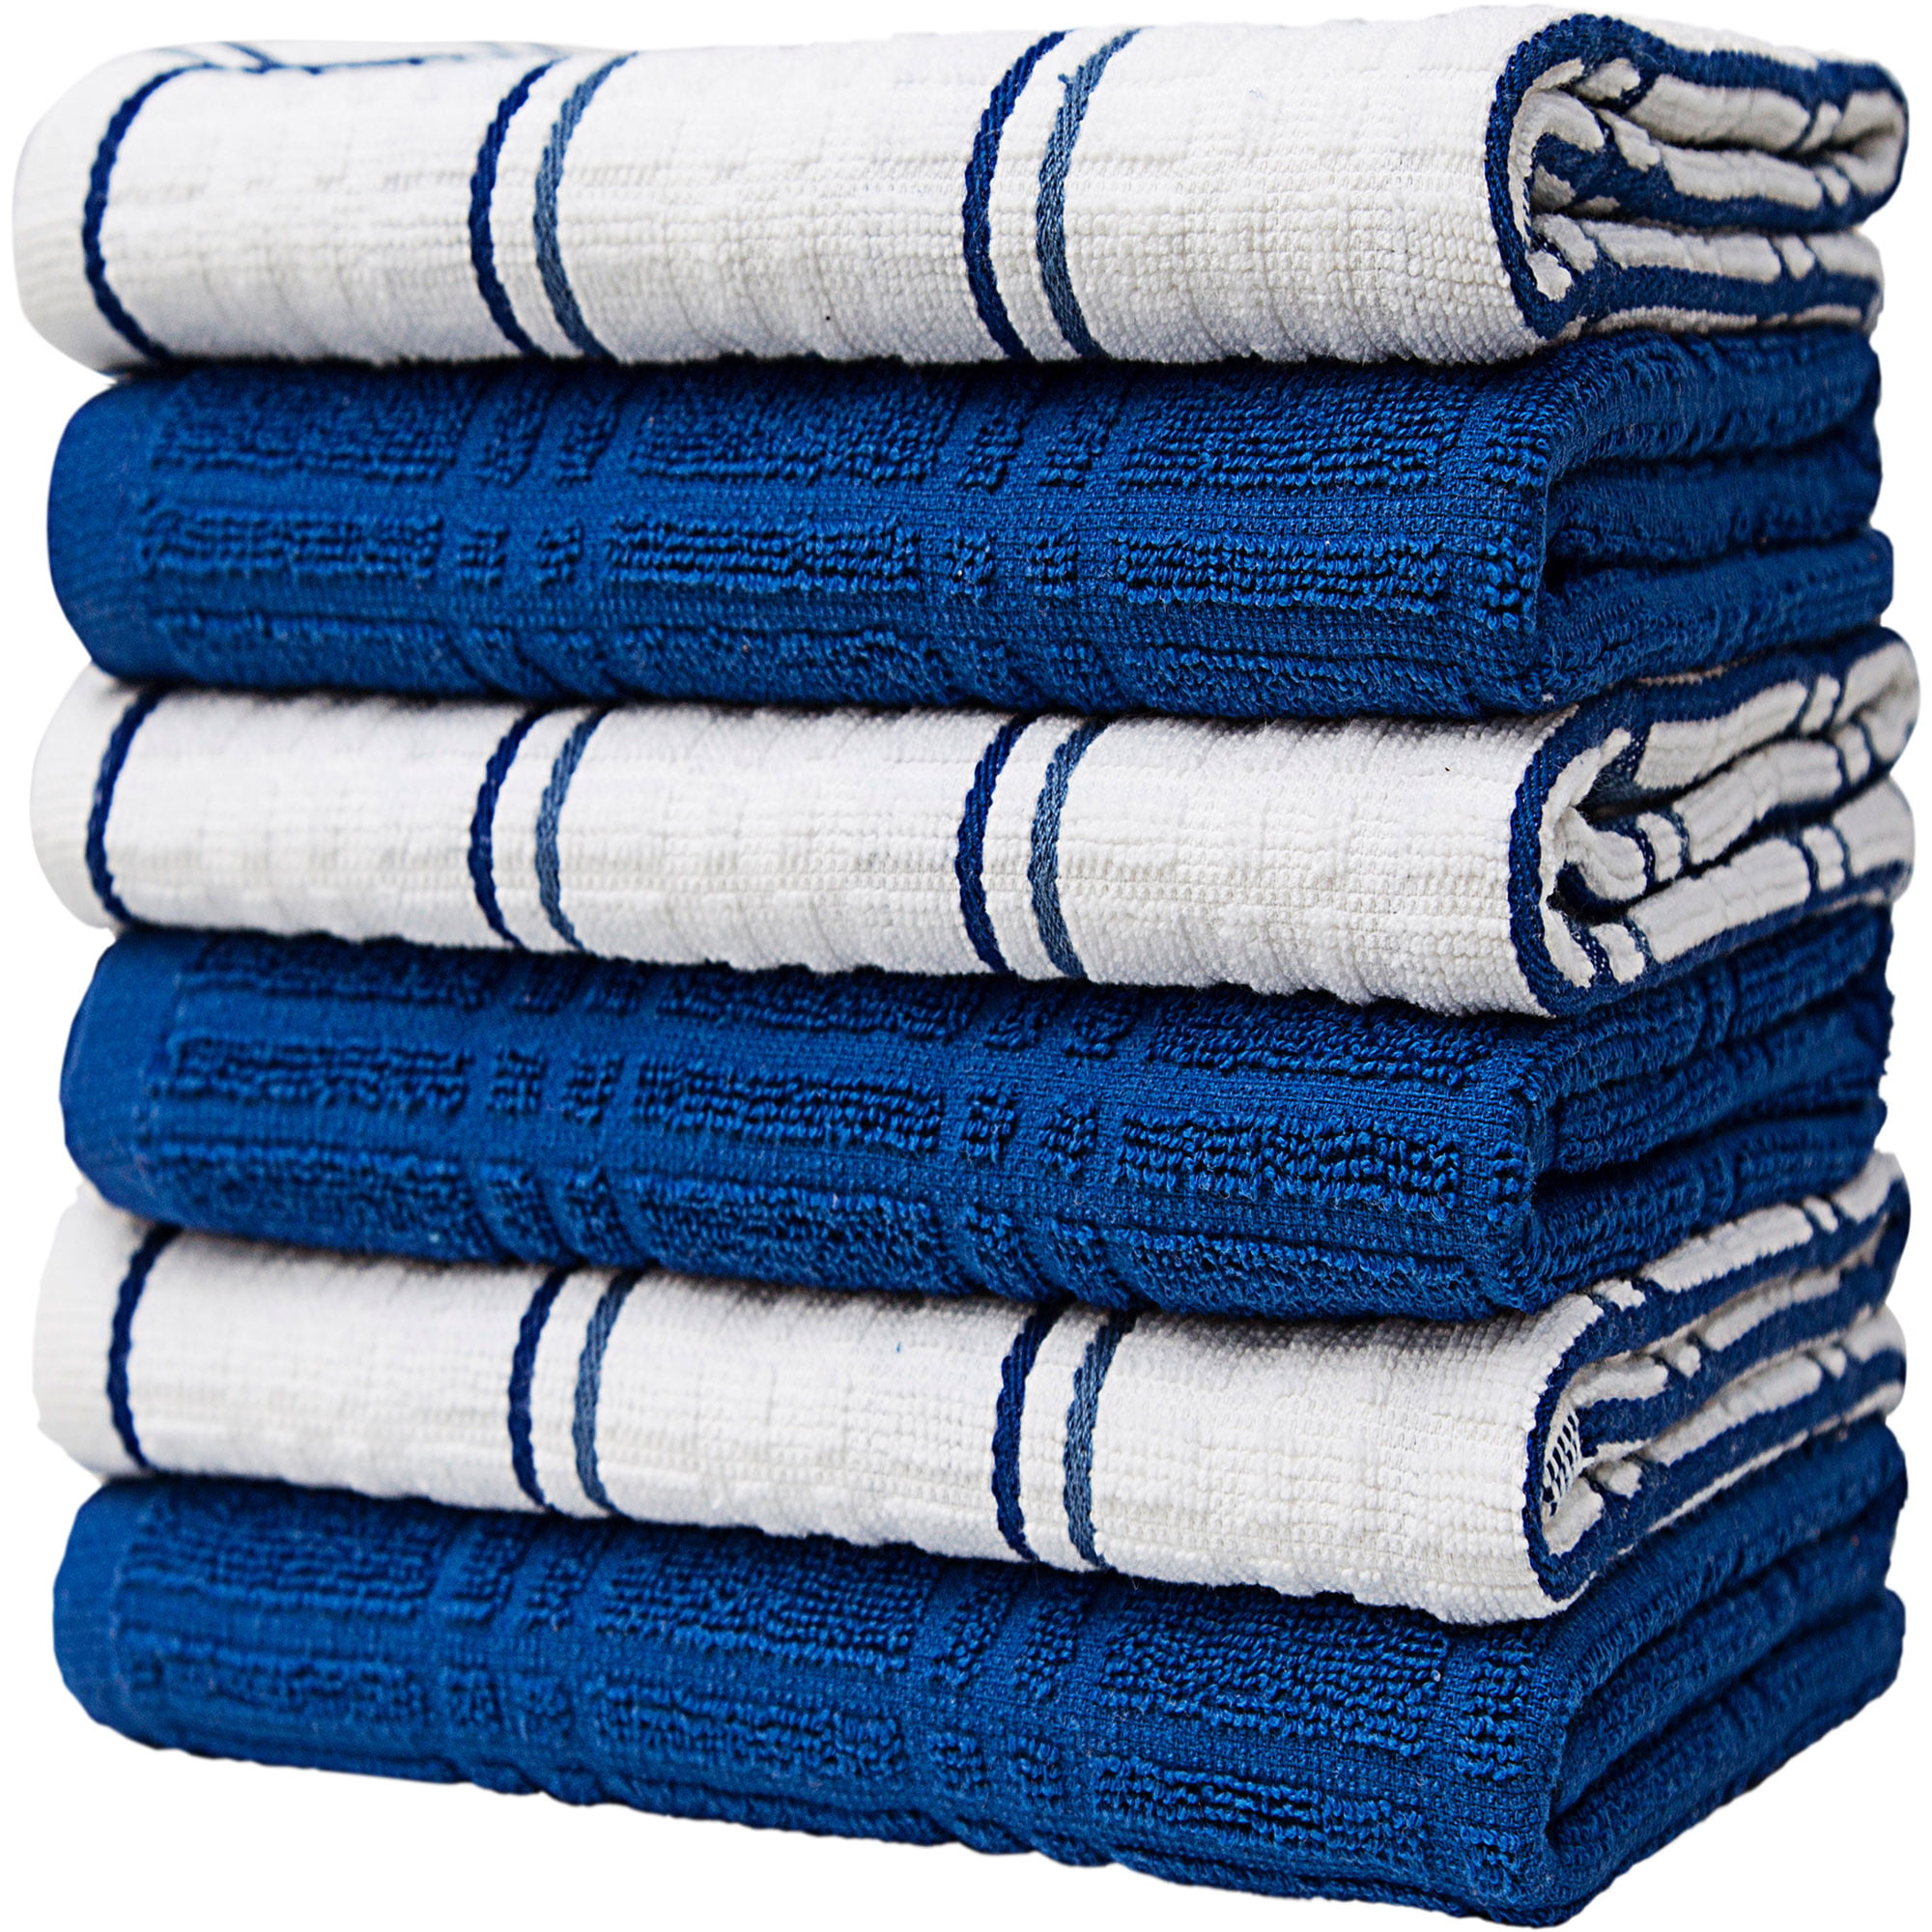 Cuisinart Kitchen Towels - Ultra Soft, Absorbent & - Premium / Cotton Fiber  Blend - Navy Aura, Set of 2, 16 x 26 - Diamond Pattern